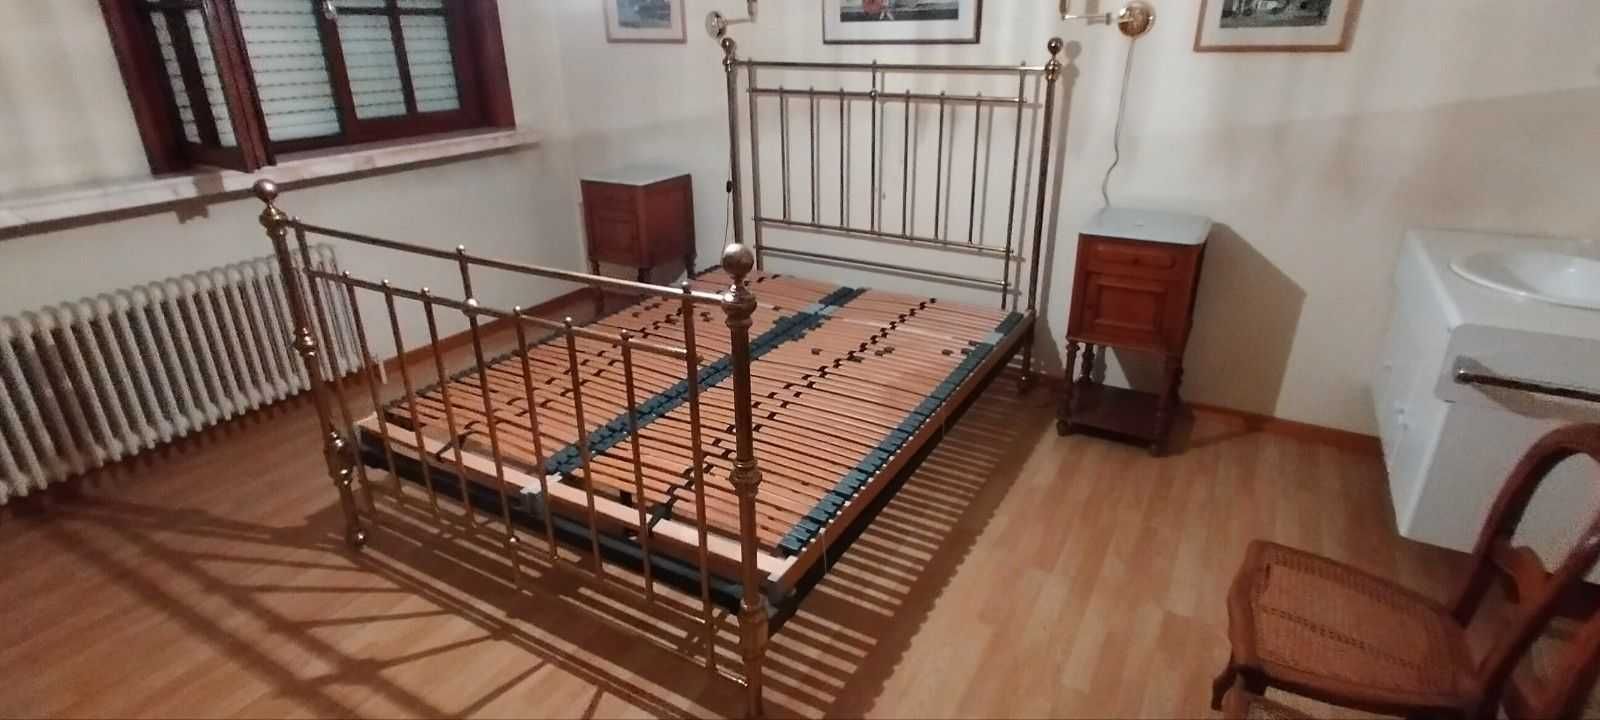 Łóżko mosiężne Antyk +/- 1870 rok Anglia